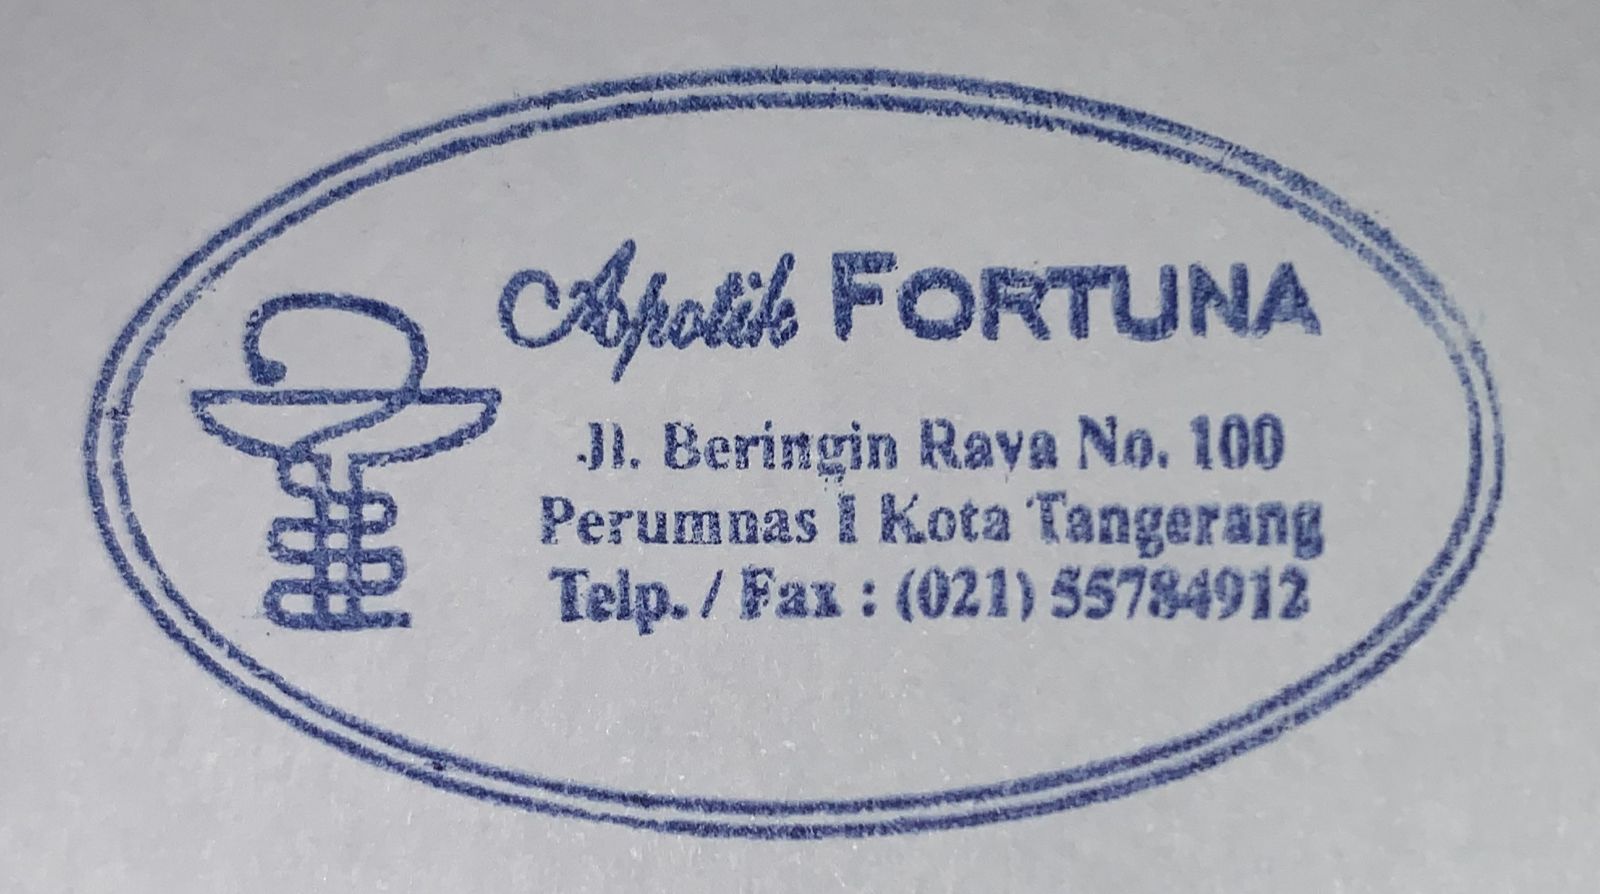 Apotek Fortuna Tangerang